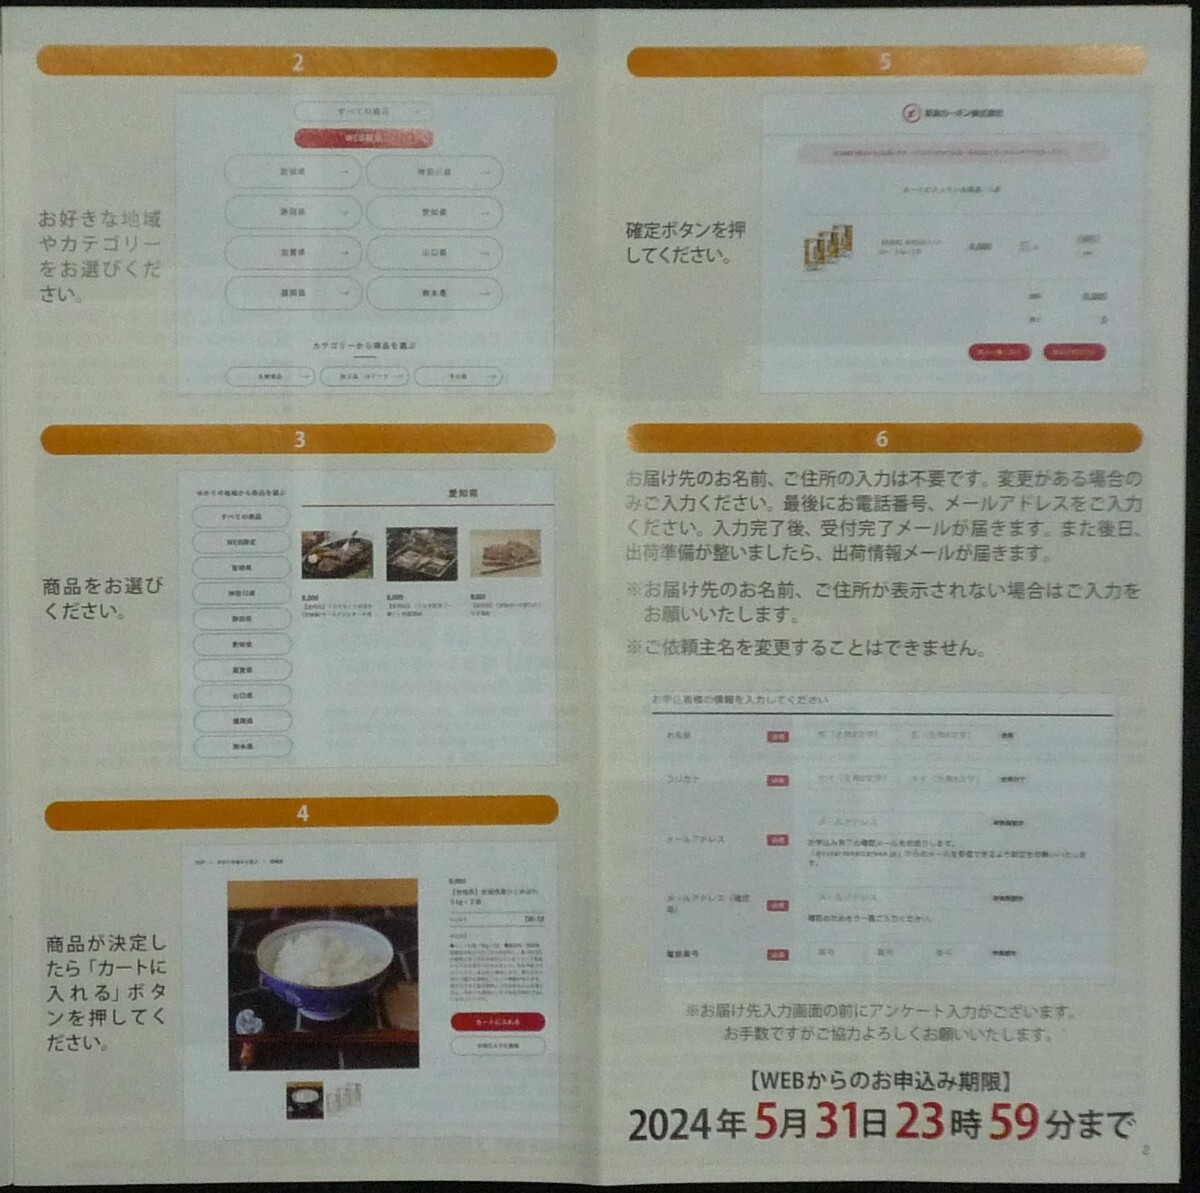  бесплатная доставка есть * каталог подарок 3000 иен соответствует Tokai карбоновый акционер гостеприимство . включено открытка наличие 4 шт иметь подарок каталог рис мясо еда отметка .. новейший быстрое решение 